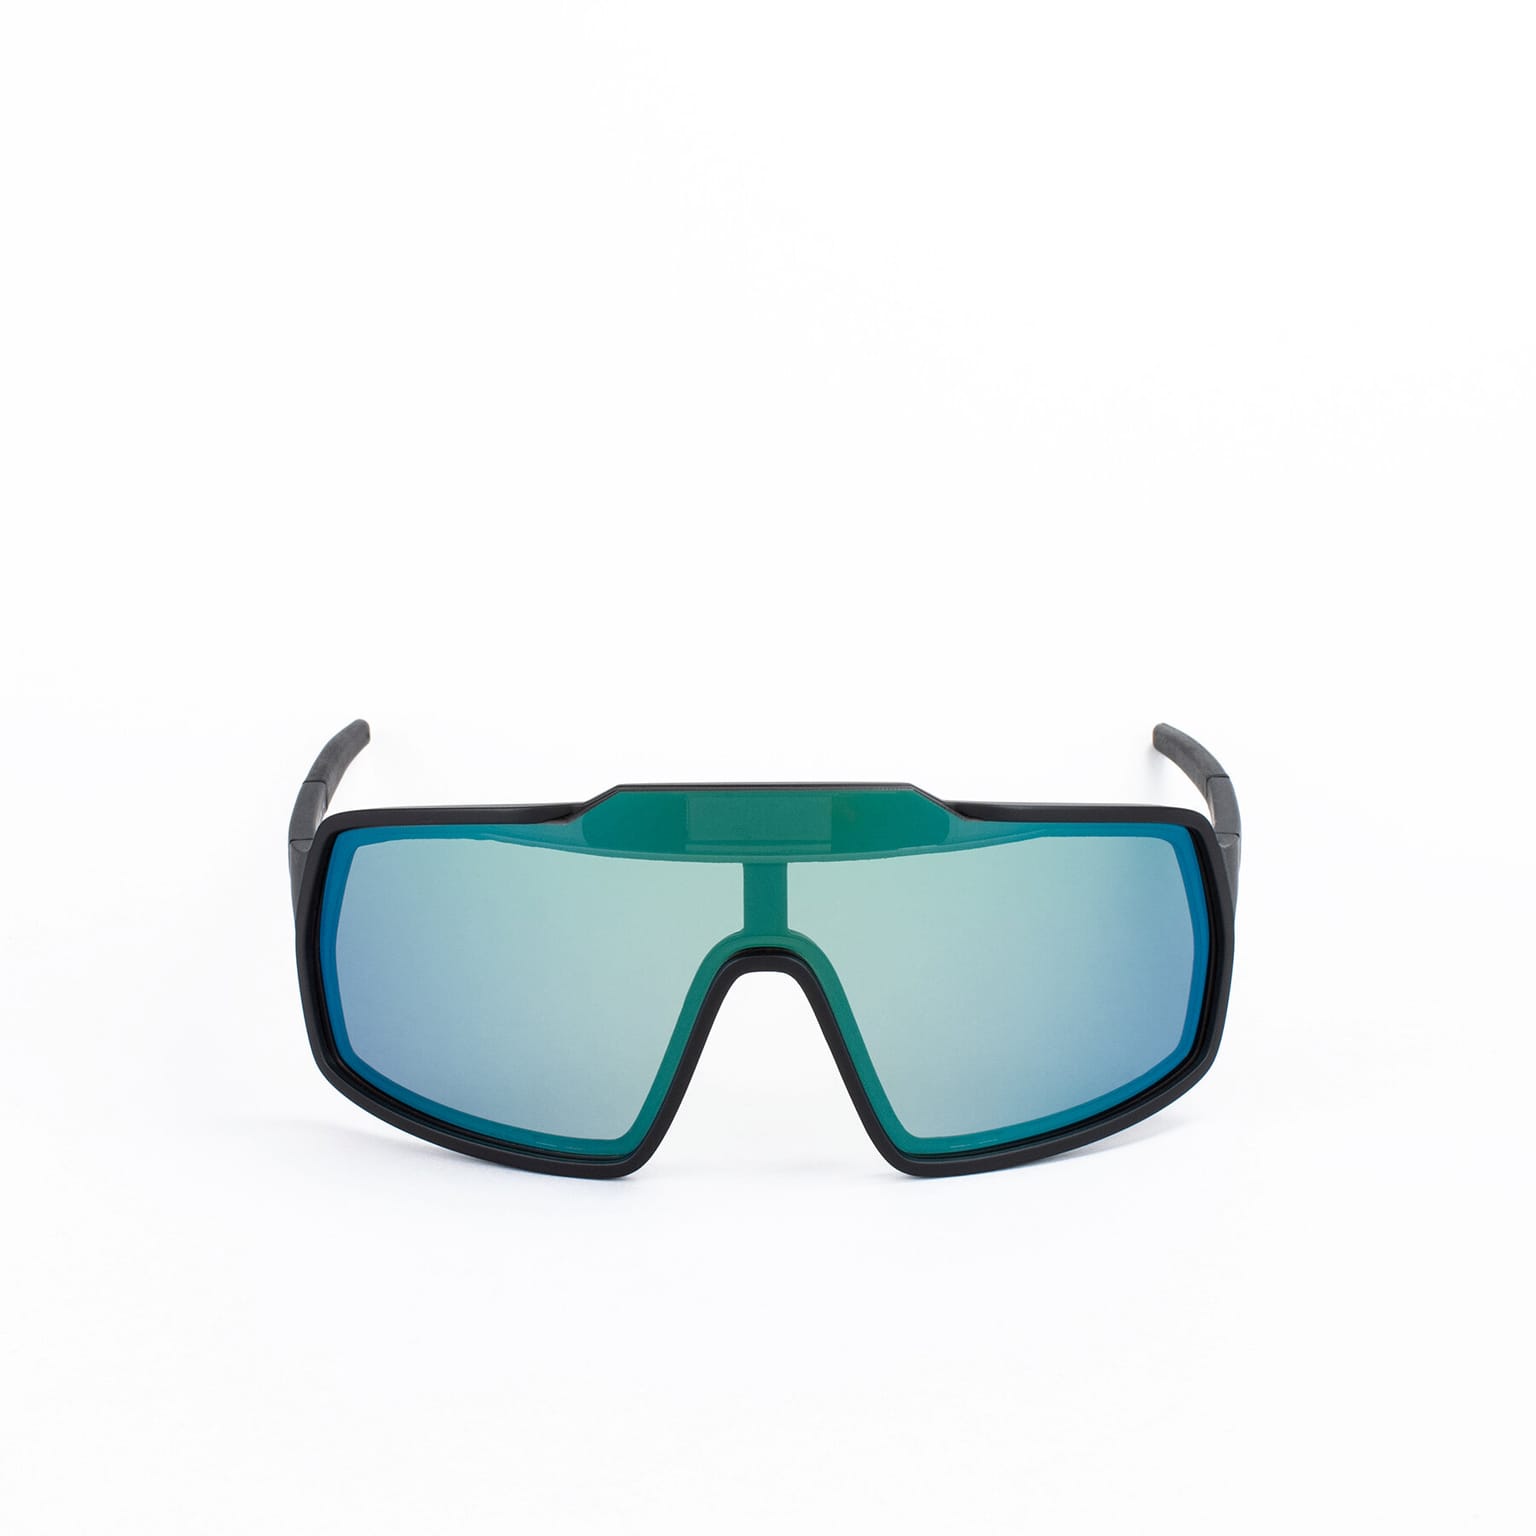 BOT 2 ADAPTA Sportbrille verde 2